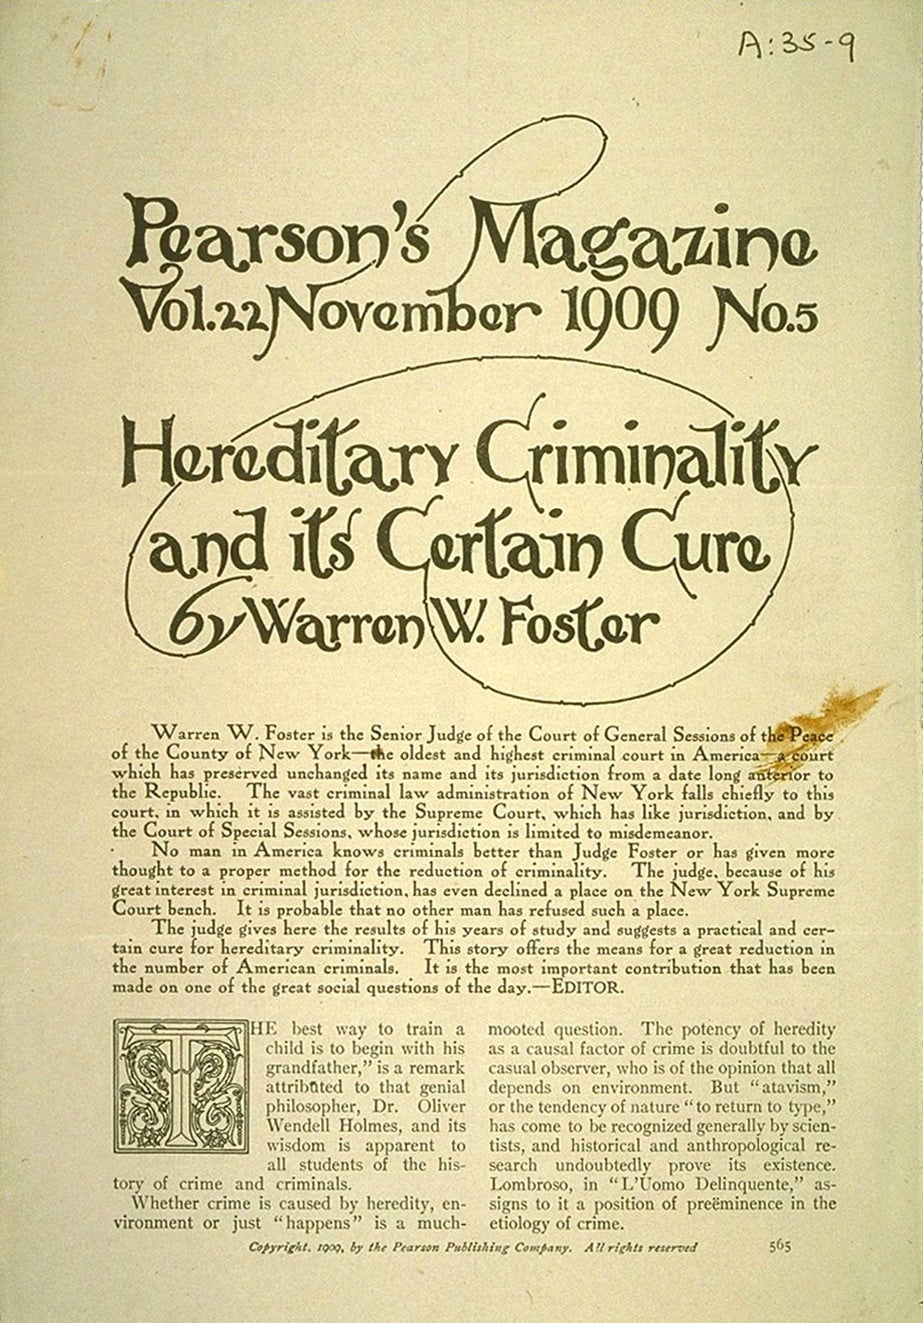 Hereditary criminality 1909